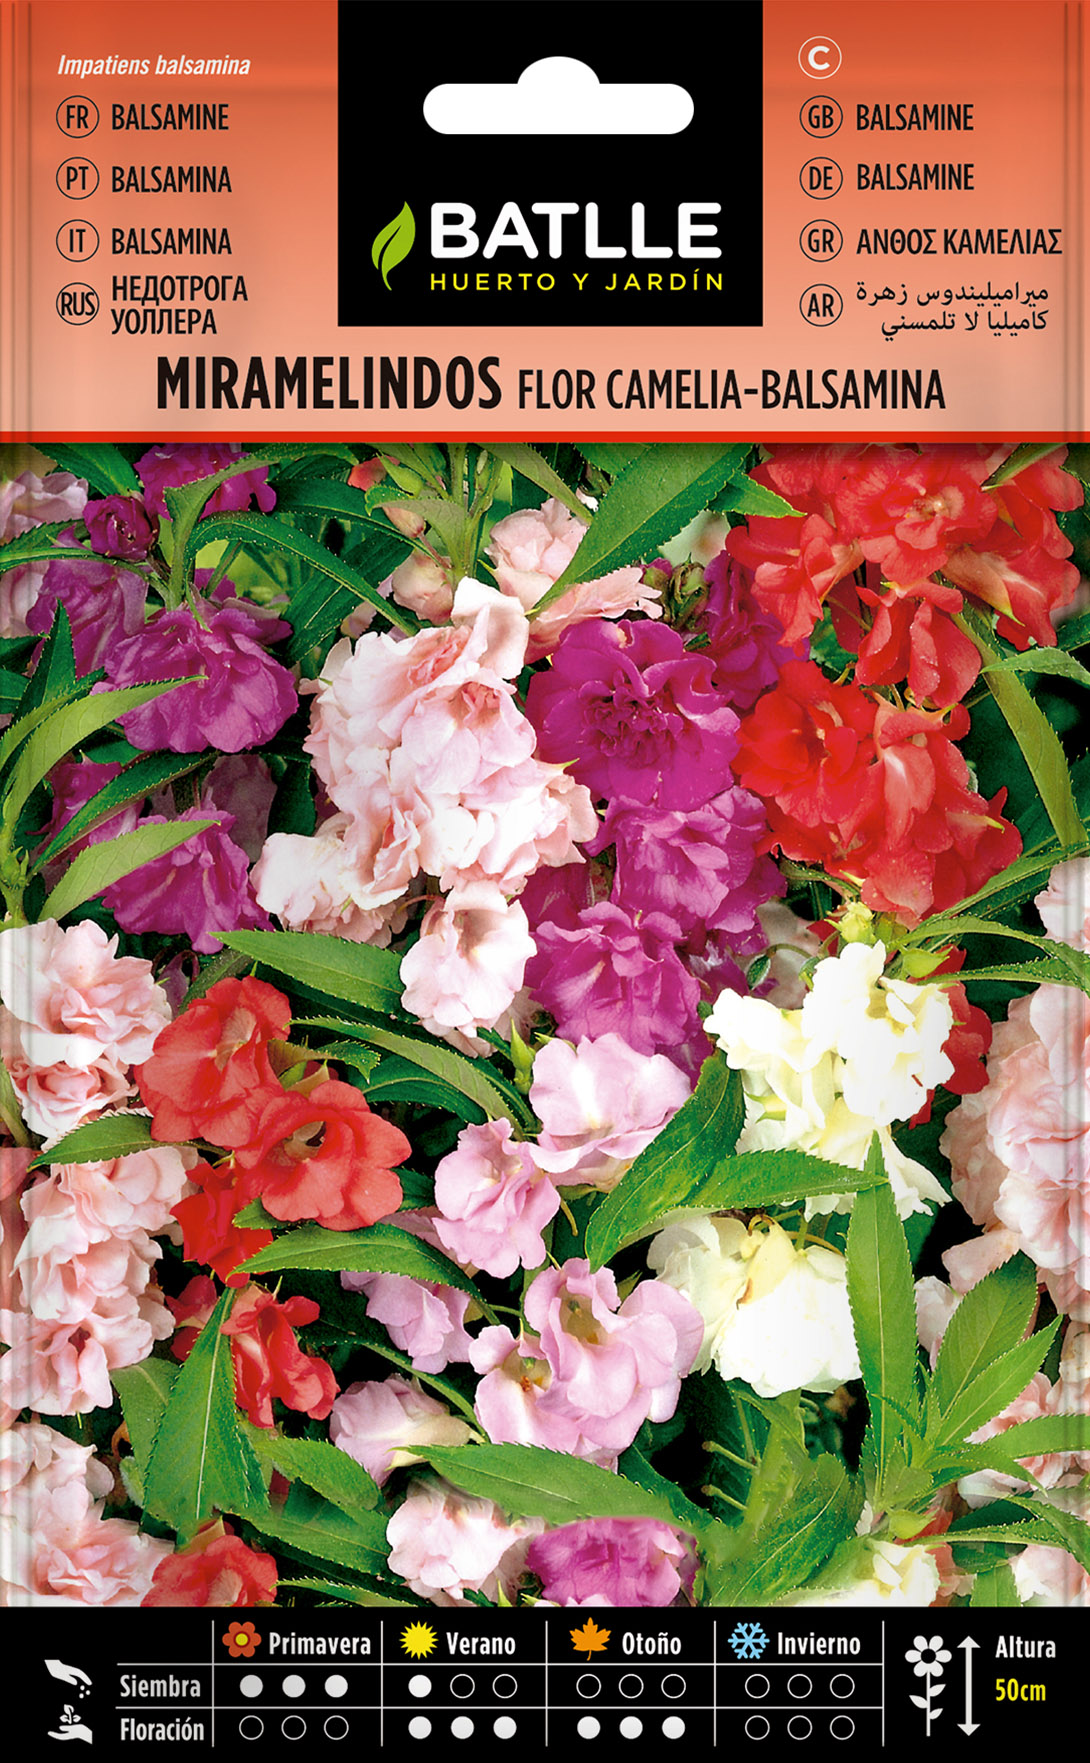 Miramelindos Flor Camelia-Balsamina - Semillas Batlle - Huerto y Jardín